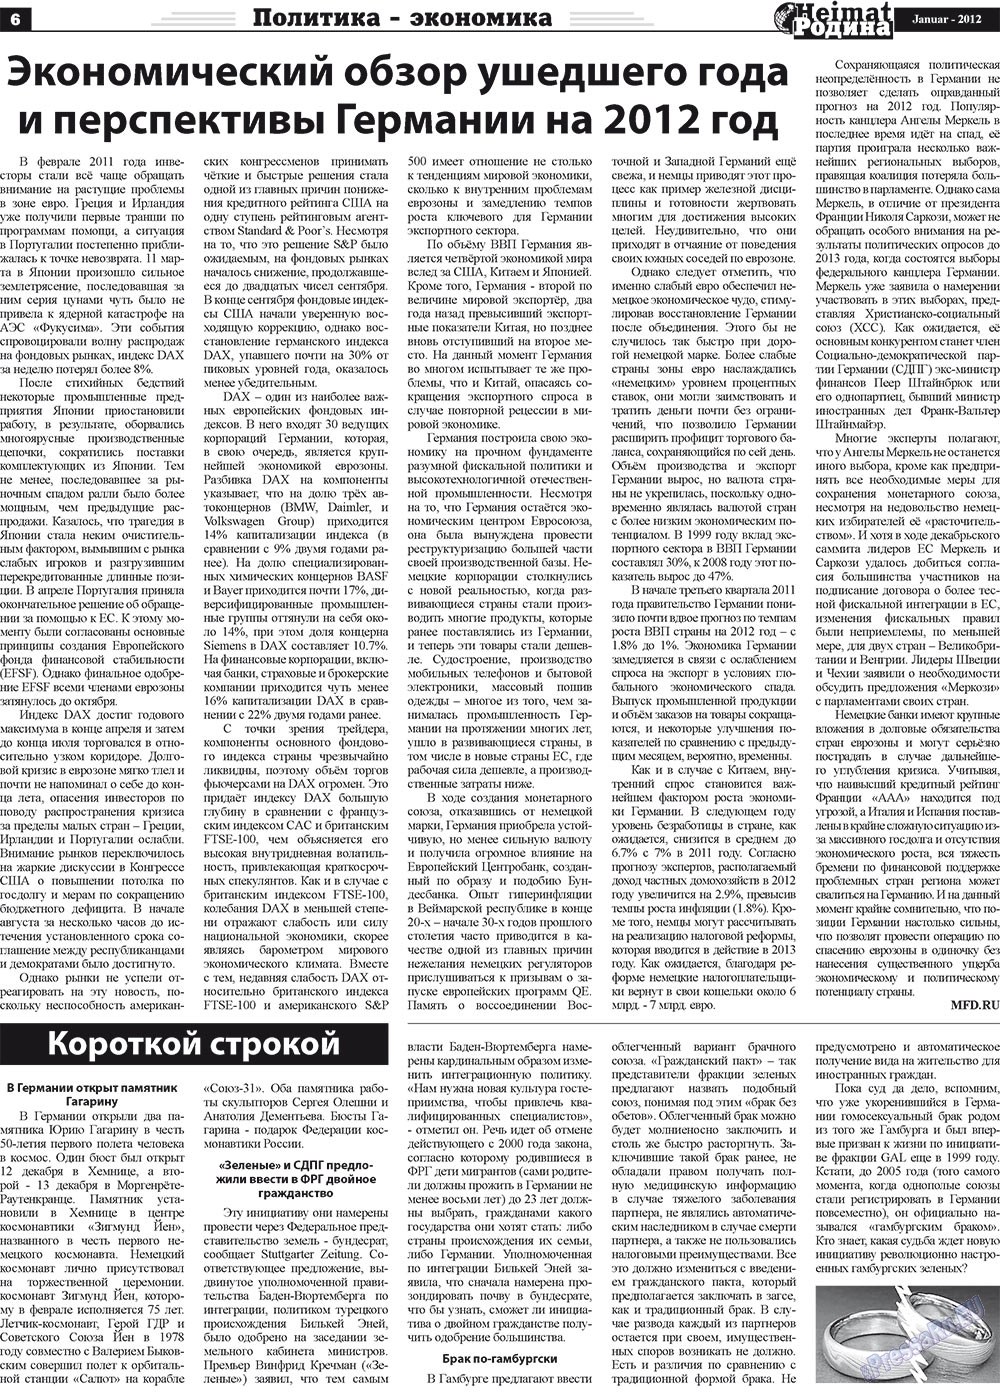 Heimat-Родина (газета). 2012 год, номер 1, стр. 6